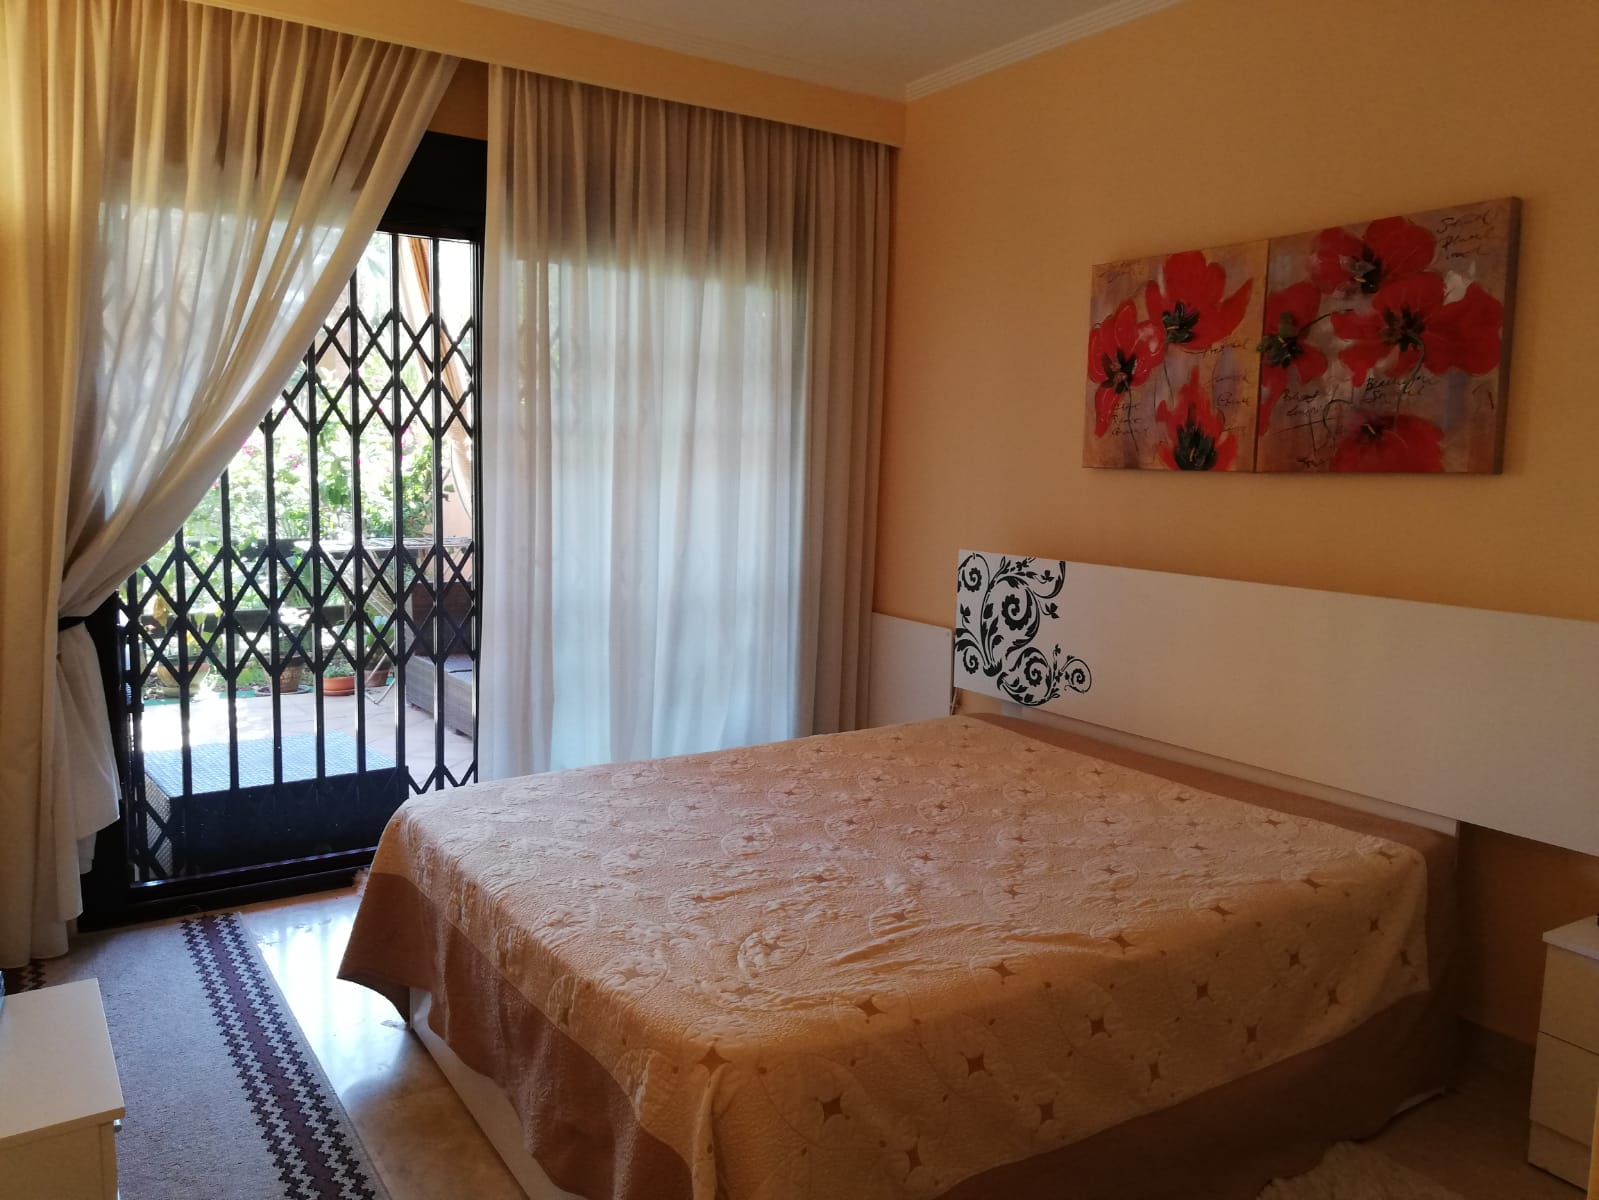 Apartamento de 2 dormitorios en venta en Costa Galera a 200 metros de la playa - mibgroup.es